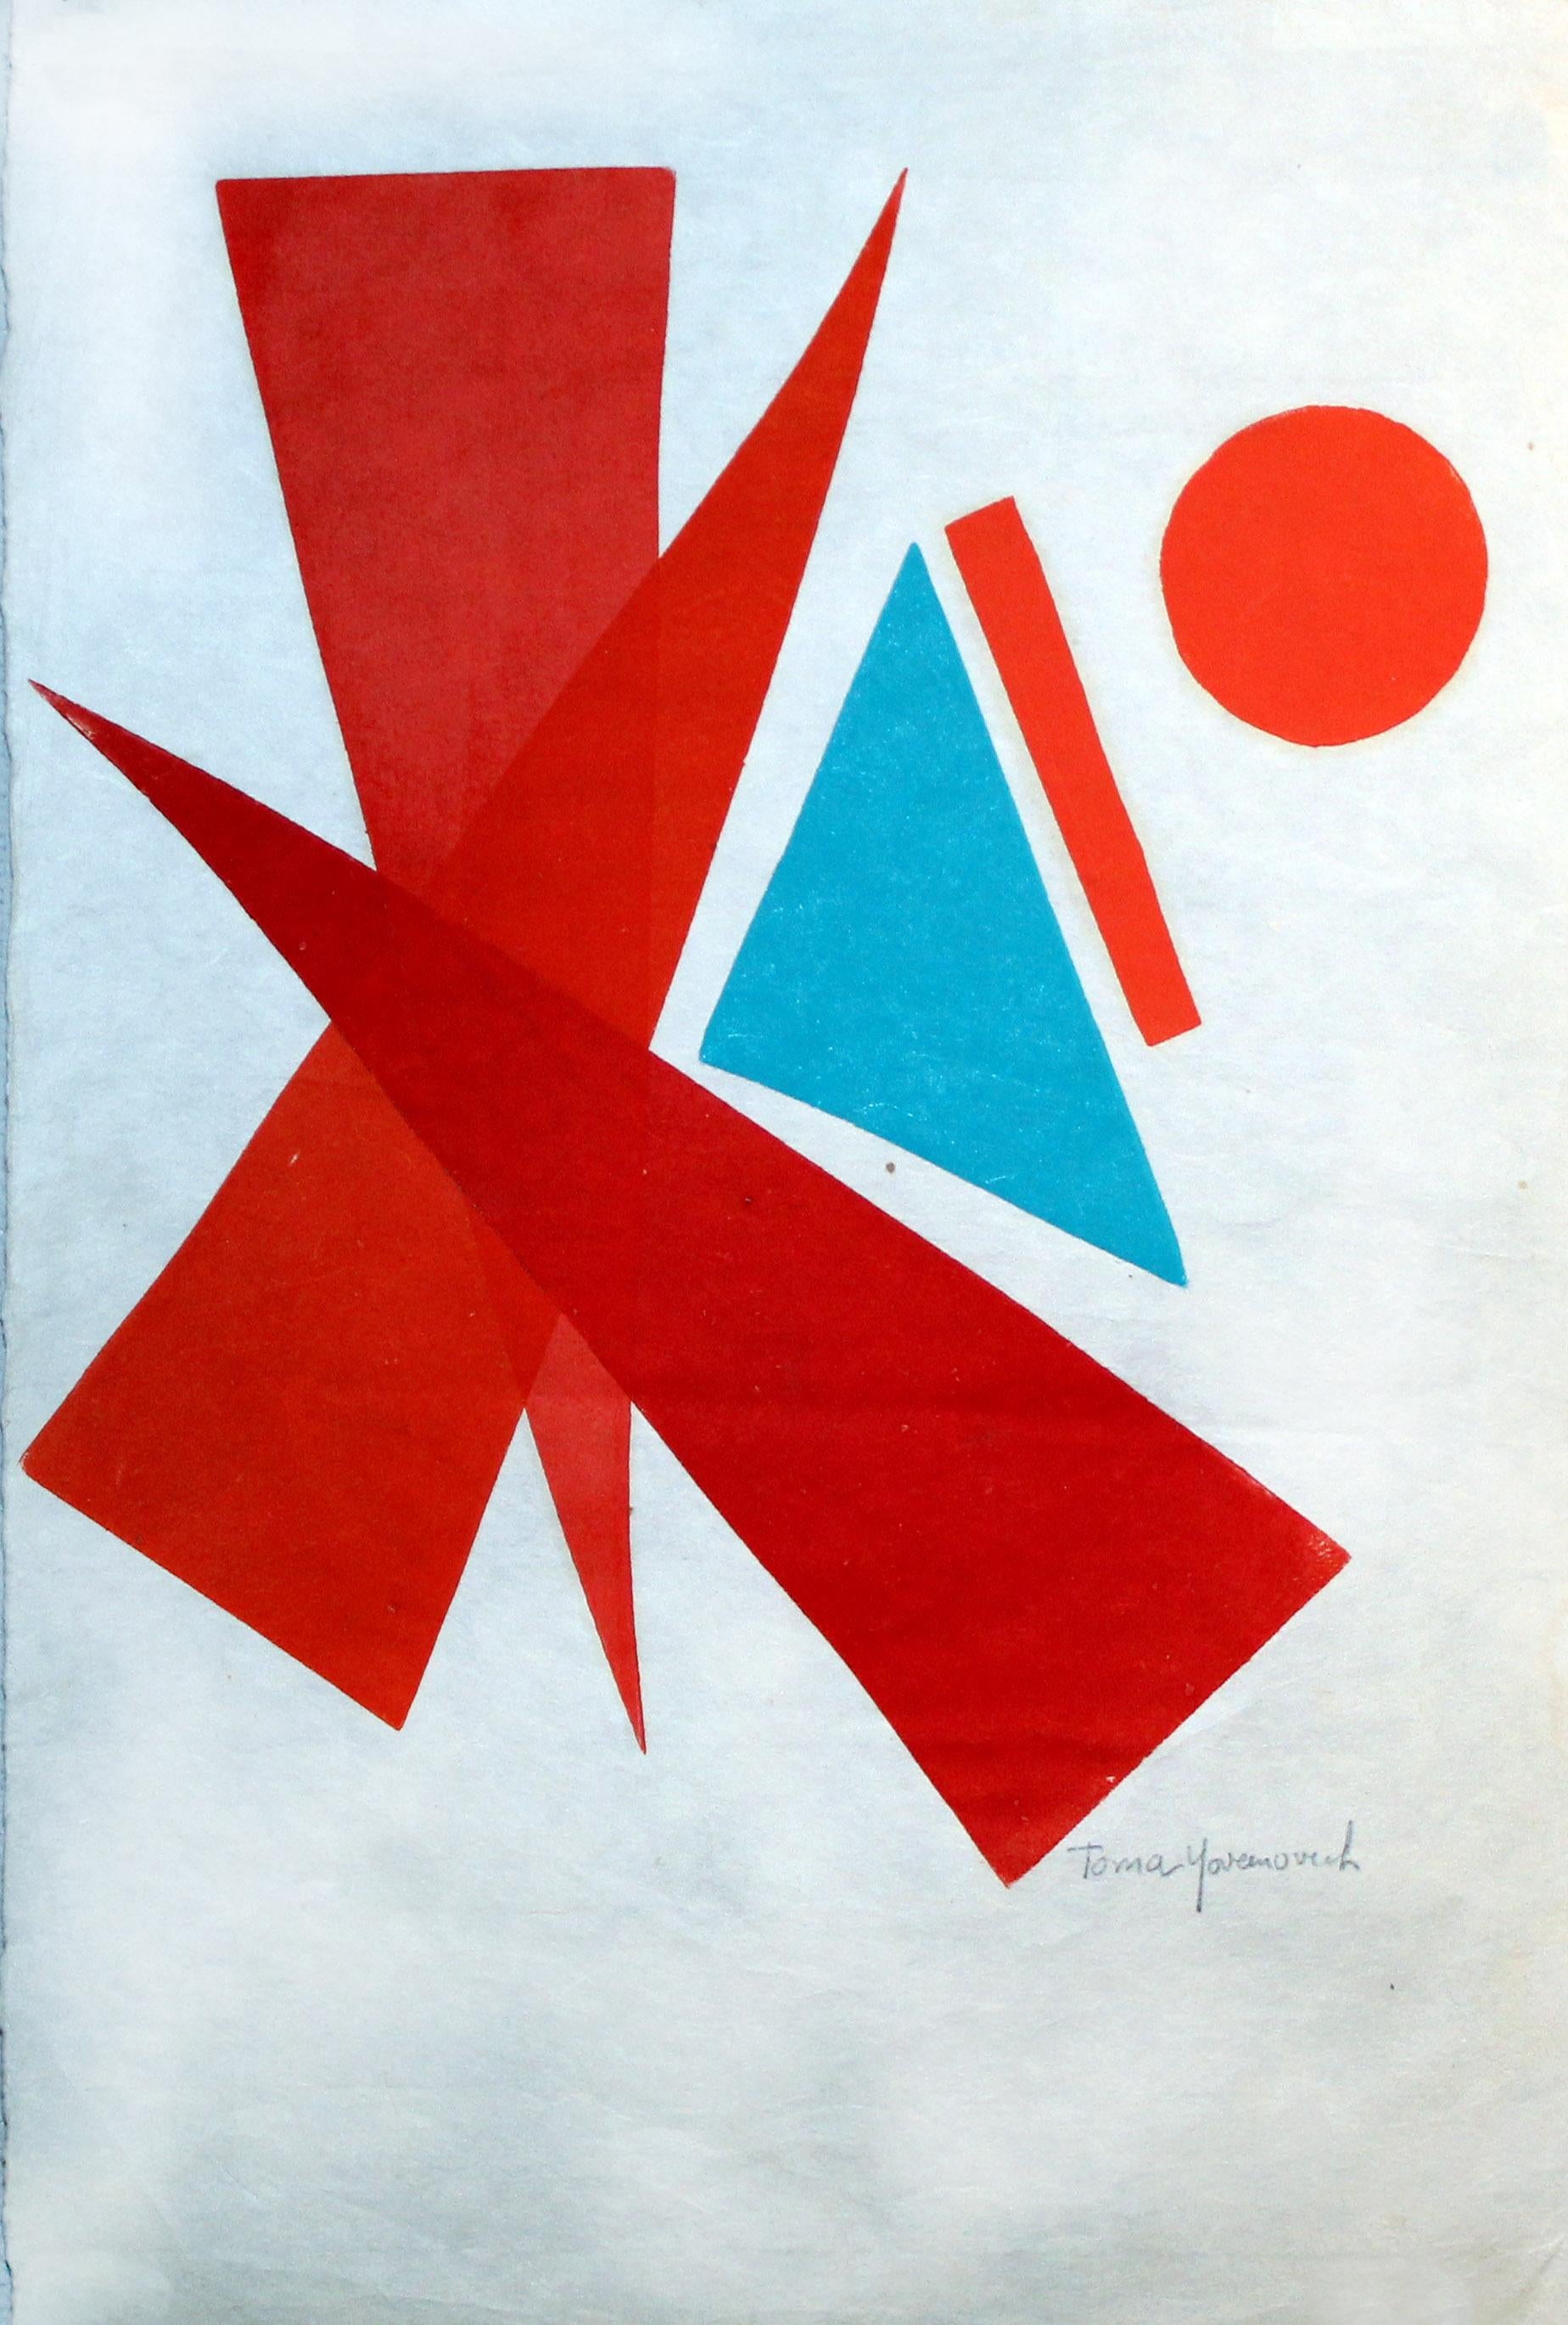 Abstraktes, farbenfrohes abstraktes Monotypie-Gemälde, amerikanisches Mid-Century 1960 – Print von Toma Yovanovich